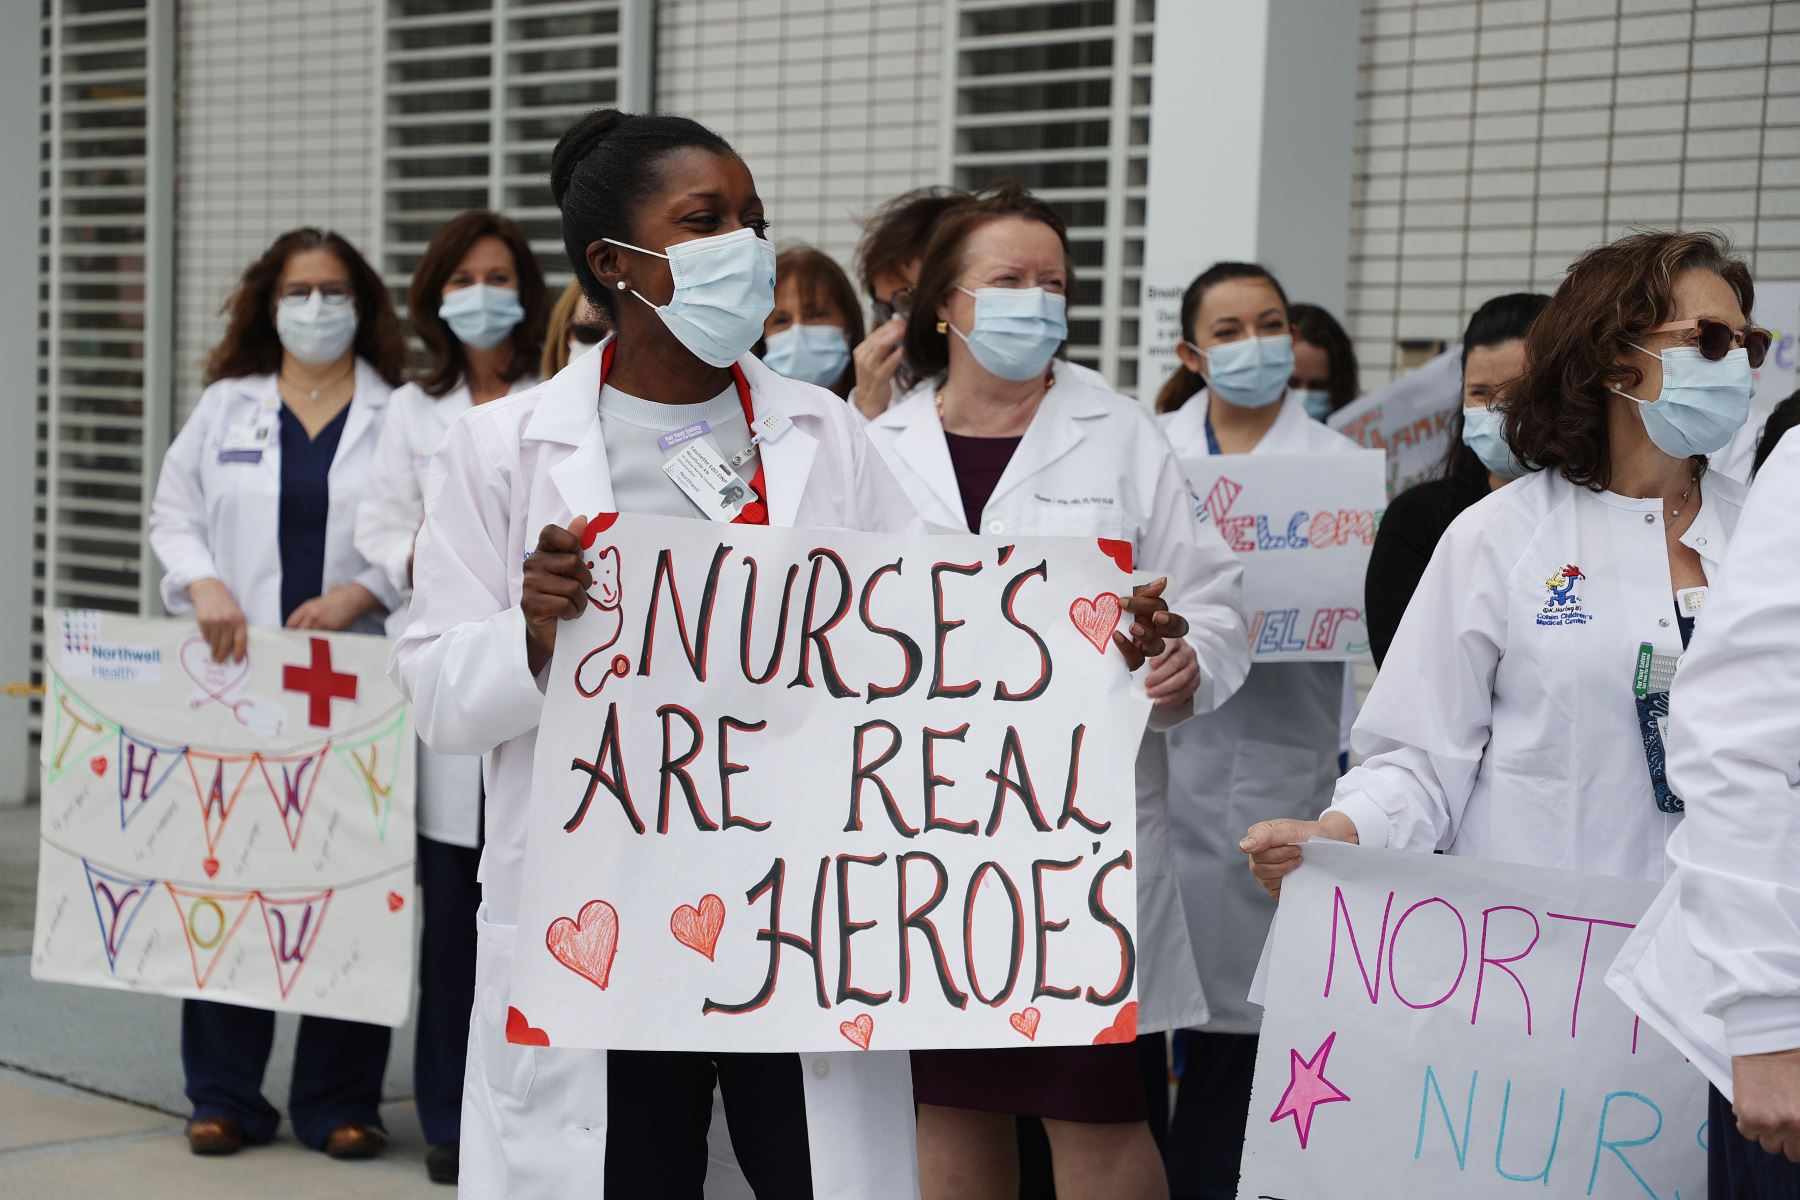 El personal de enfermería y los administradores sostienen carteles y esperan para dar la bienvenida y aplaudir a las enfermeras que llegan de todo el país para ayudar a tratar a los pacientes con coronavirus.
Foto: AFP